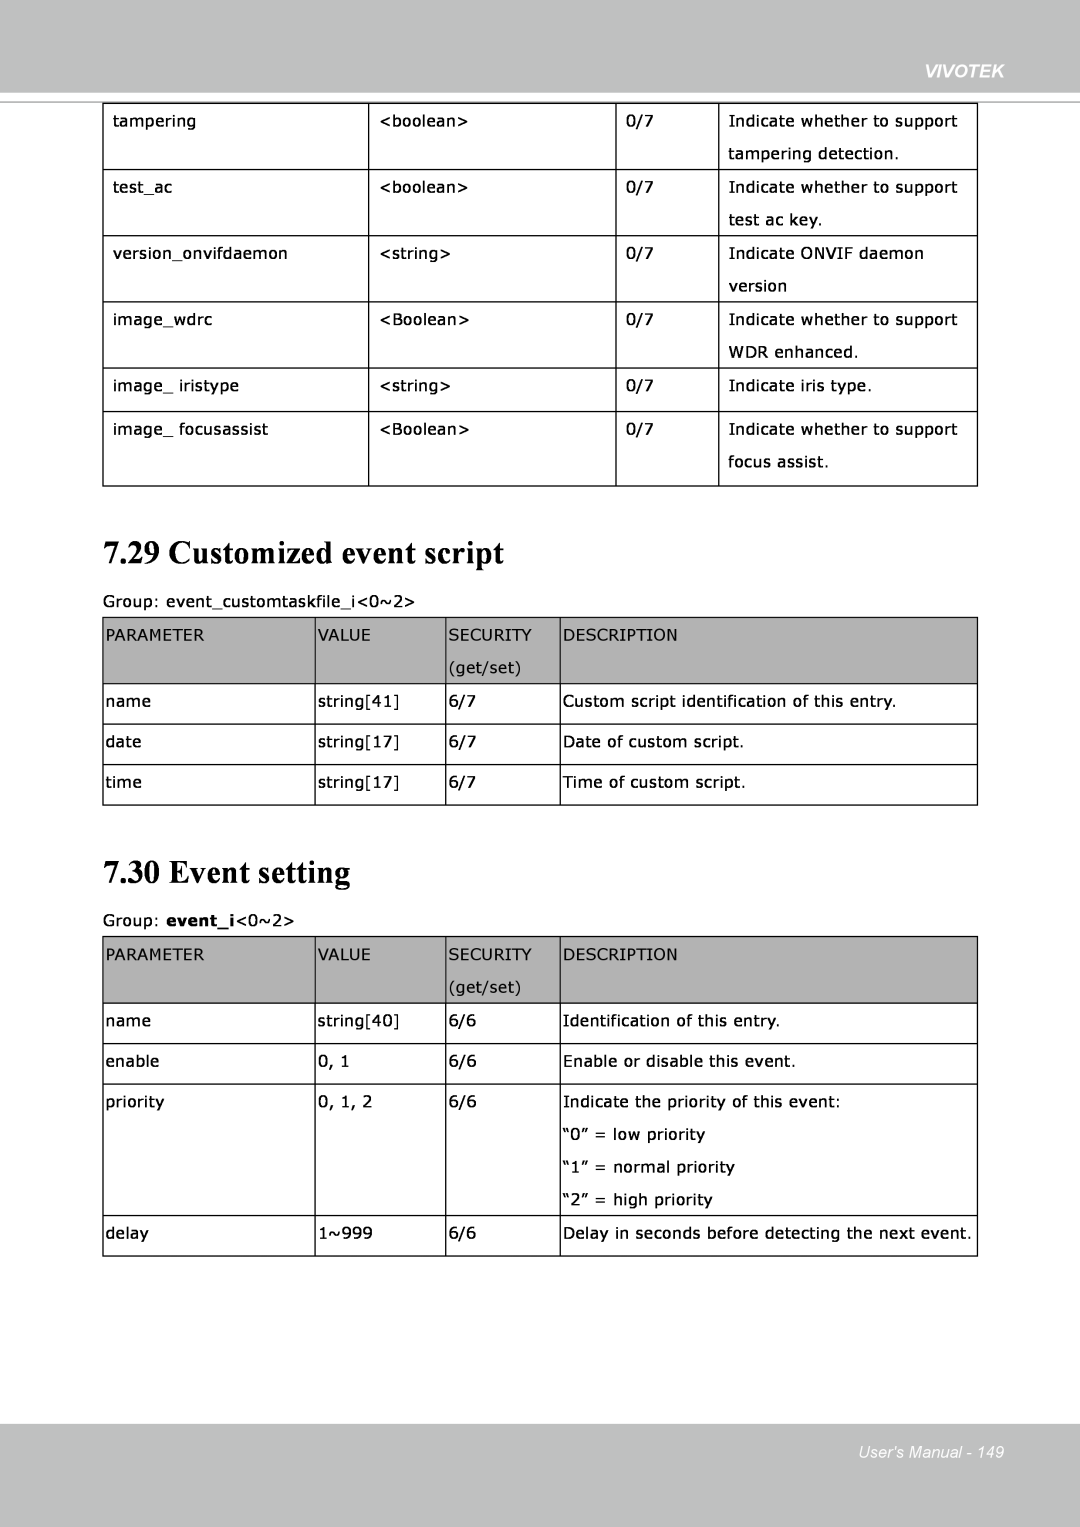 Vivotek IP8352 manual Customized event script, Event setting, Vivotek, Users Manual 